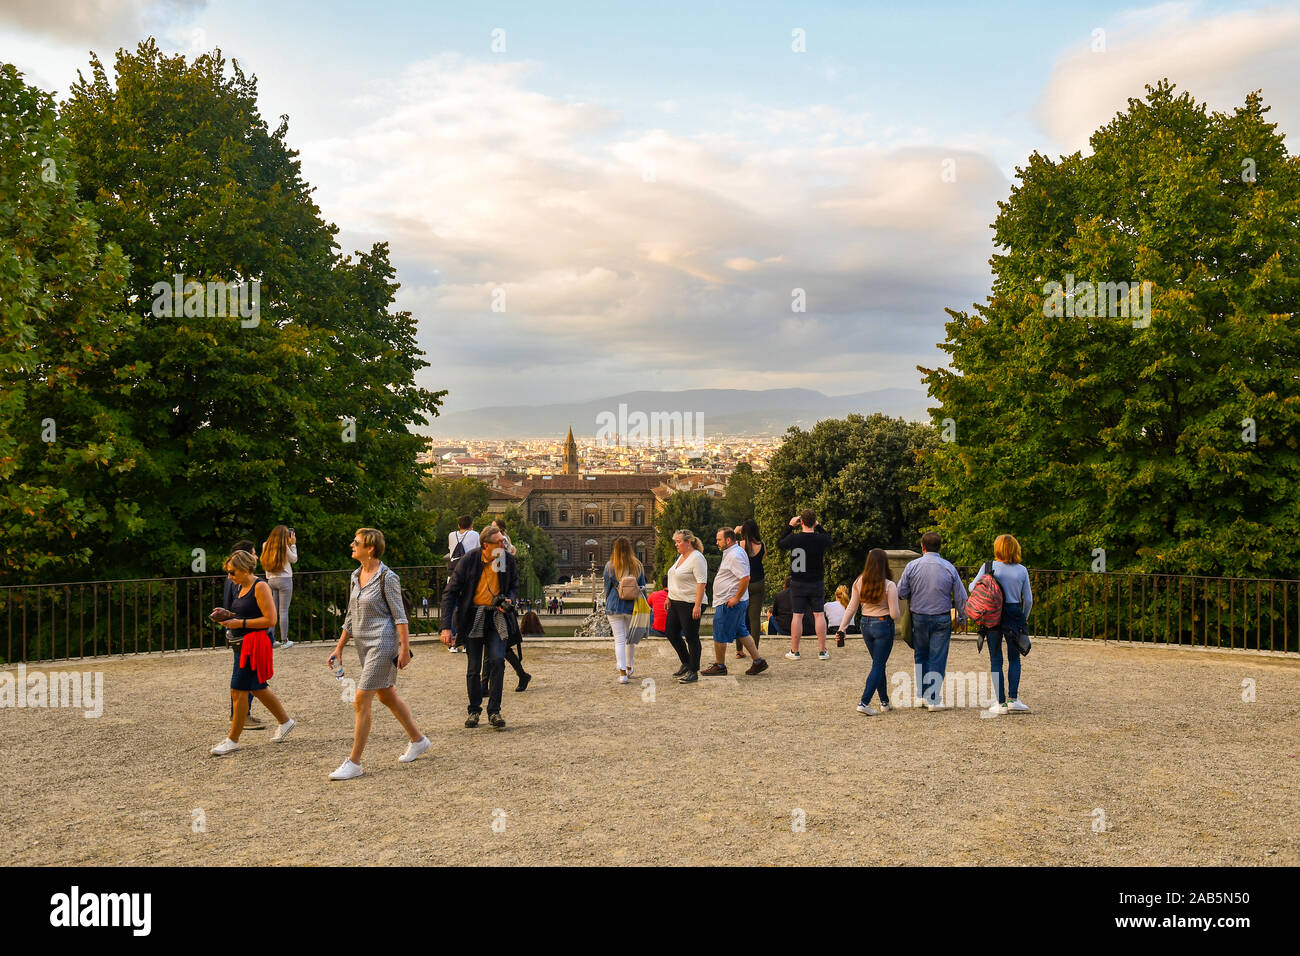 Les touristes à pied et admirer le paysage du jardin de Boboli du Palais Pitti dans le centre historique de Florence, Toscane, Italie Banque D'Images